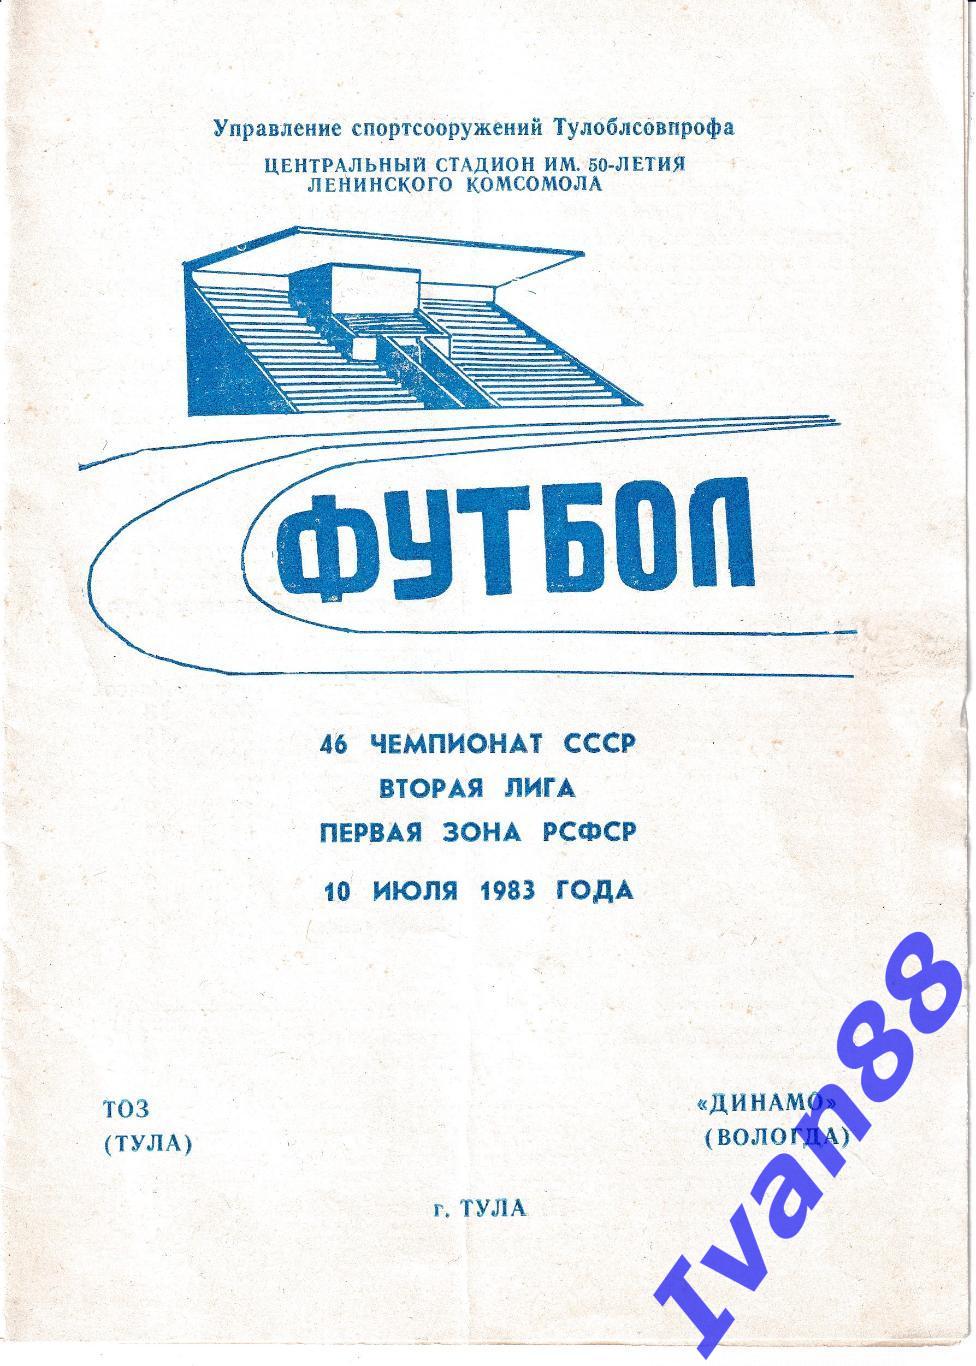 ТОЗ Тула - Динамо Вологда 1983